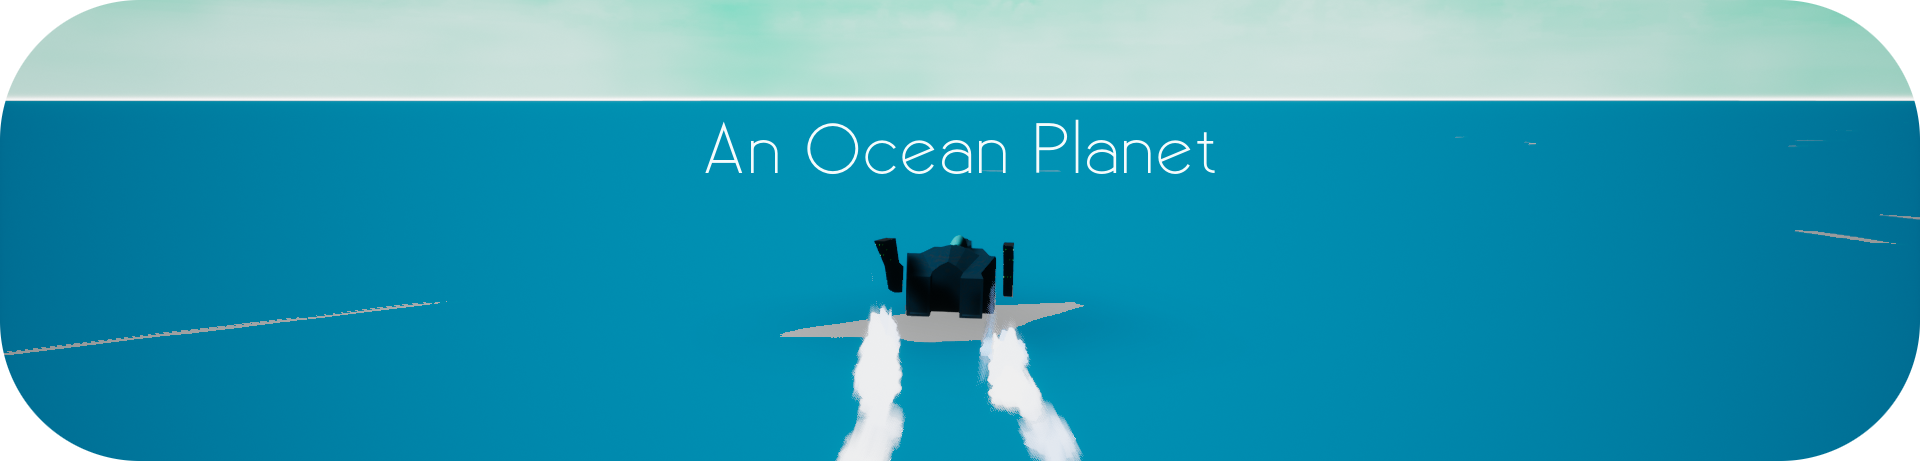 An Ocean Planet